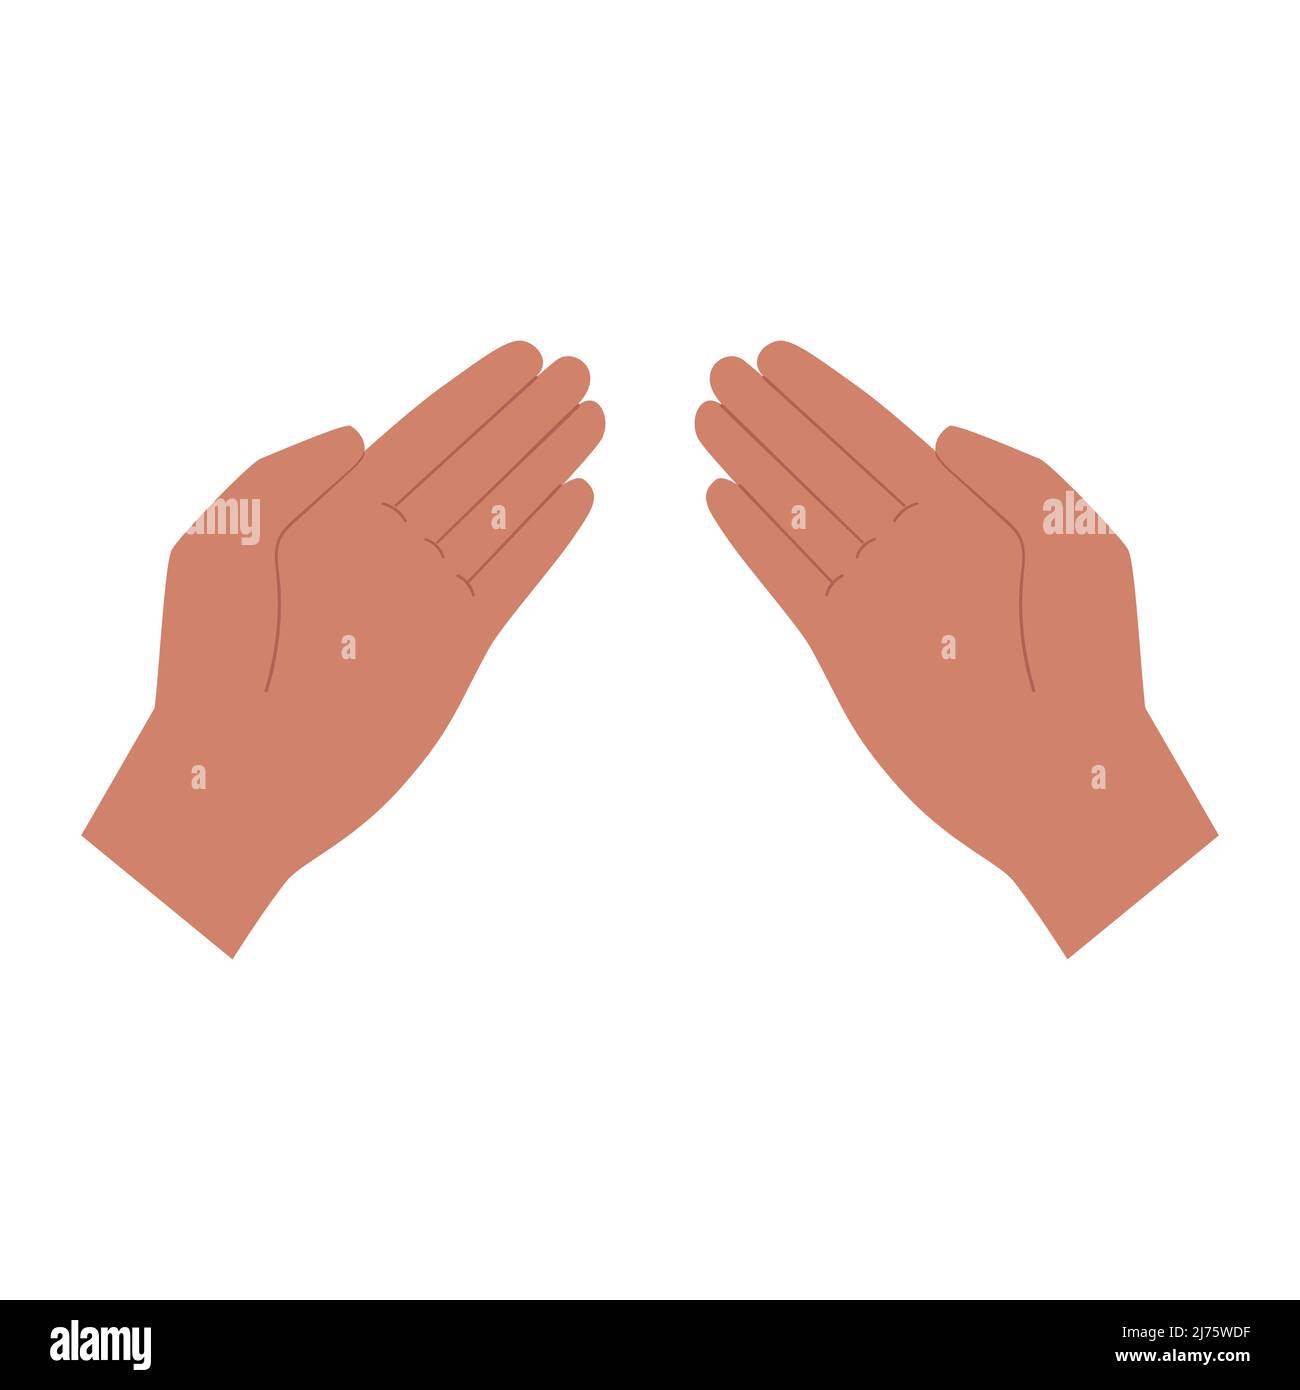 Zwei Hände, die Handflächen nach oben. Geste. Hält, gibt, zeigt etwas. Menschliche Hände. Auf weißem Hintergrund isolierte Darstellung von Farbvektoren. Stock Vektor